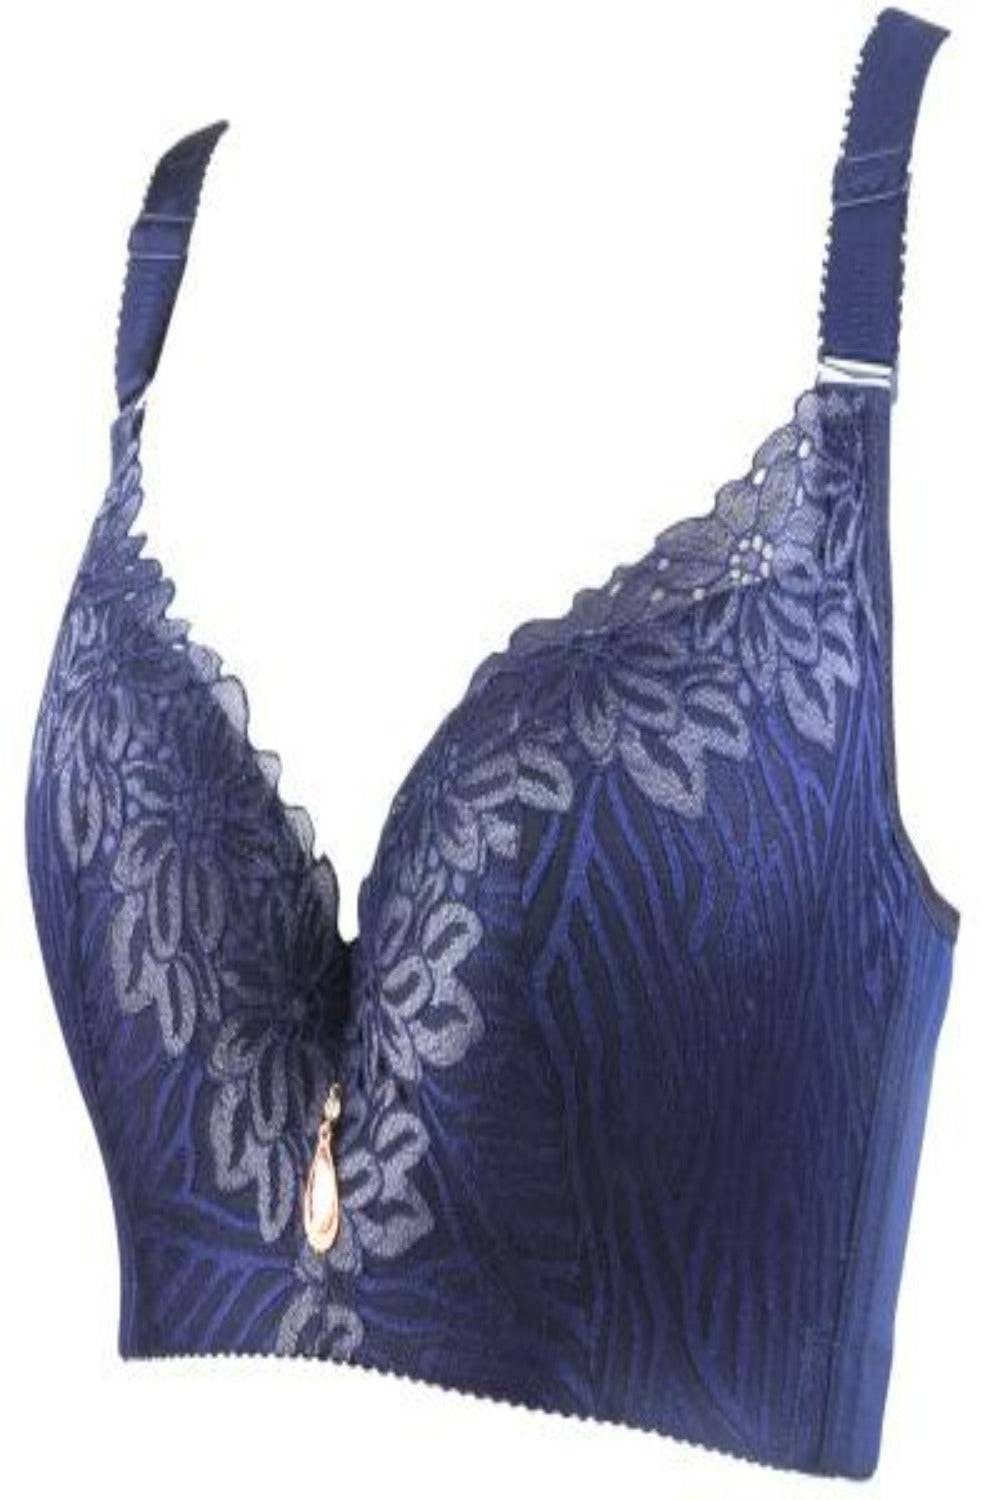 Desert Rose Plus Size Bra Underwear Lingerie Set - TGC Boutique